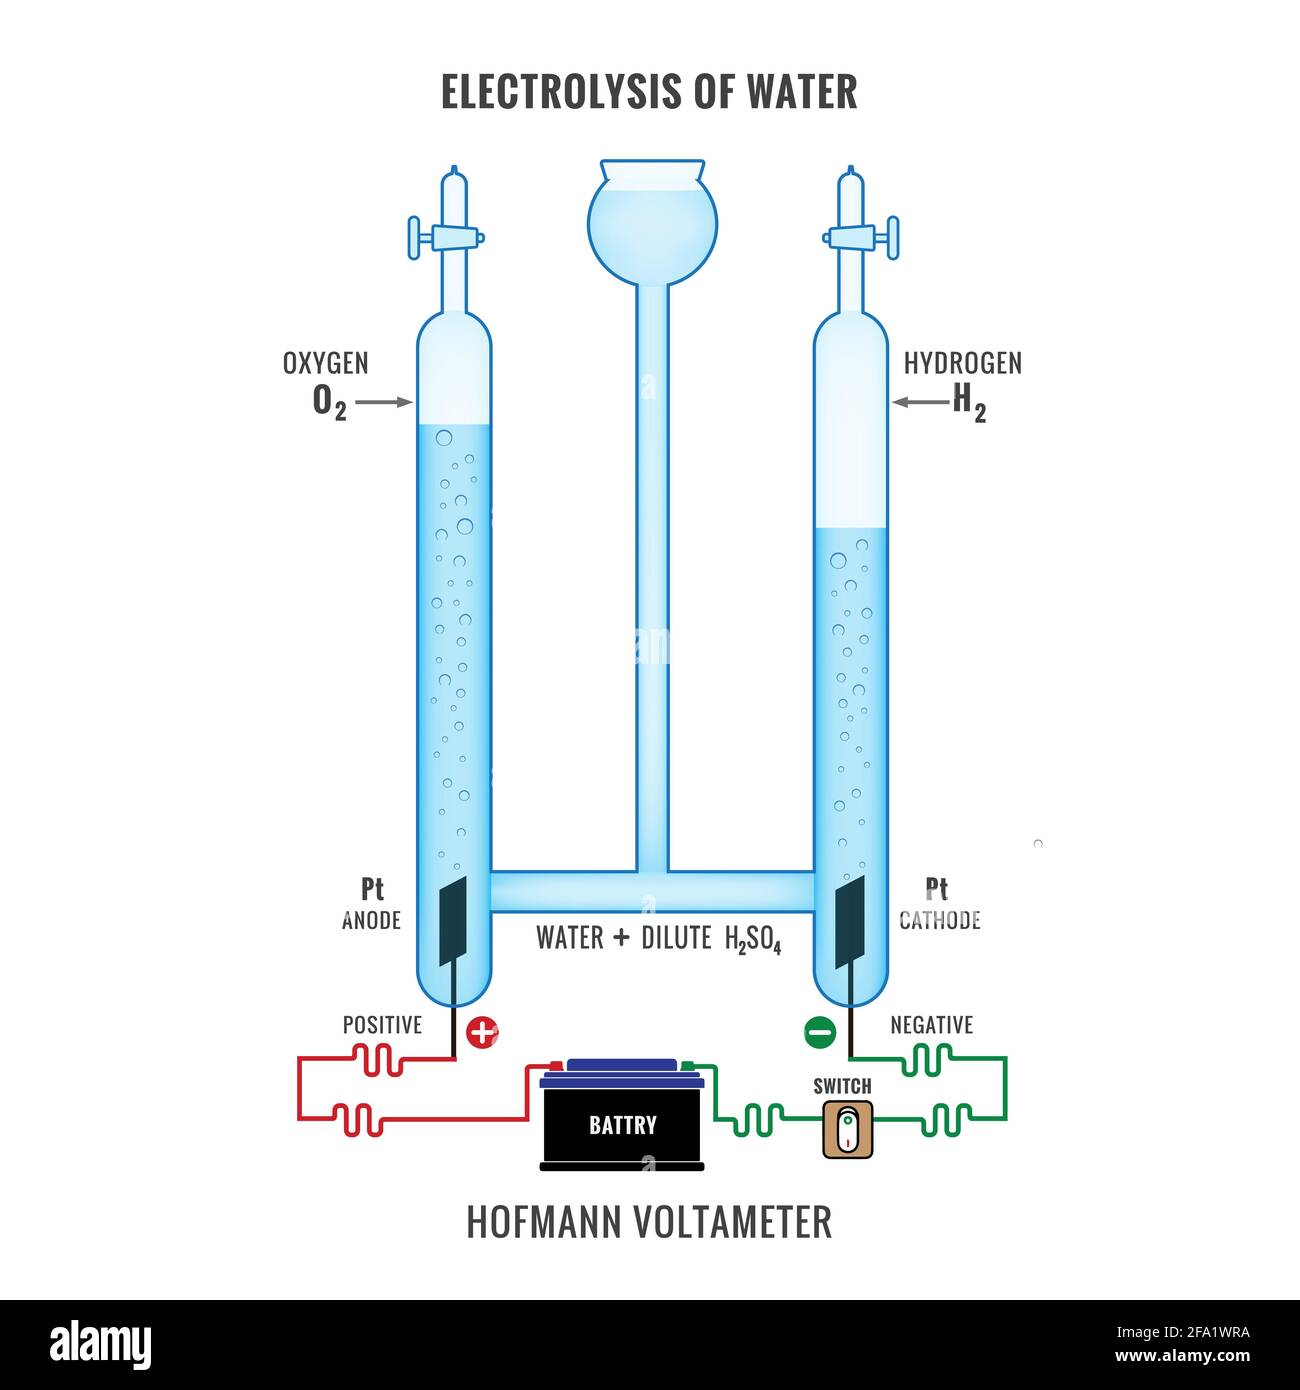 Elettrolisi dell'acqua. Diagramma etichettato per mostrare l'elettrolisi di acqua acidificata che forma idrogeno e gas ossigeno. Elettrolisi dell'acqua in Hofmann Illustrazione Vettoriale